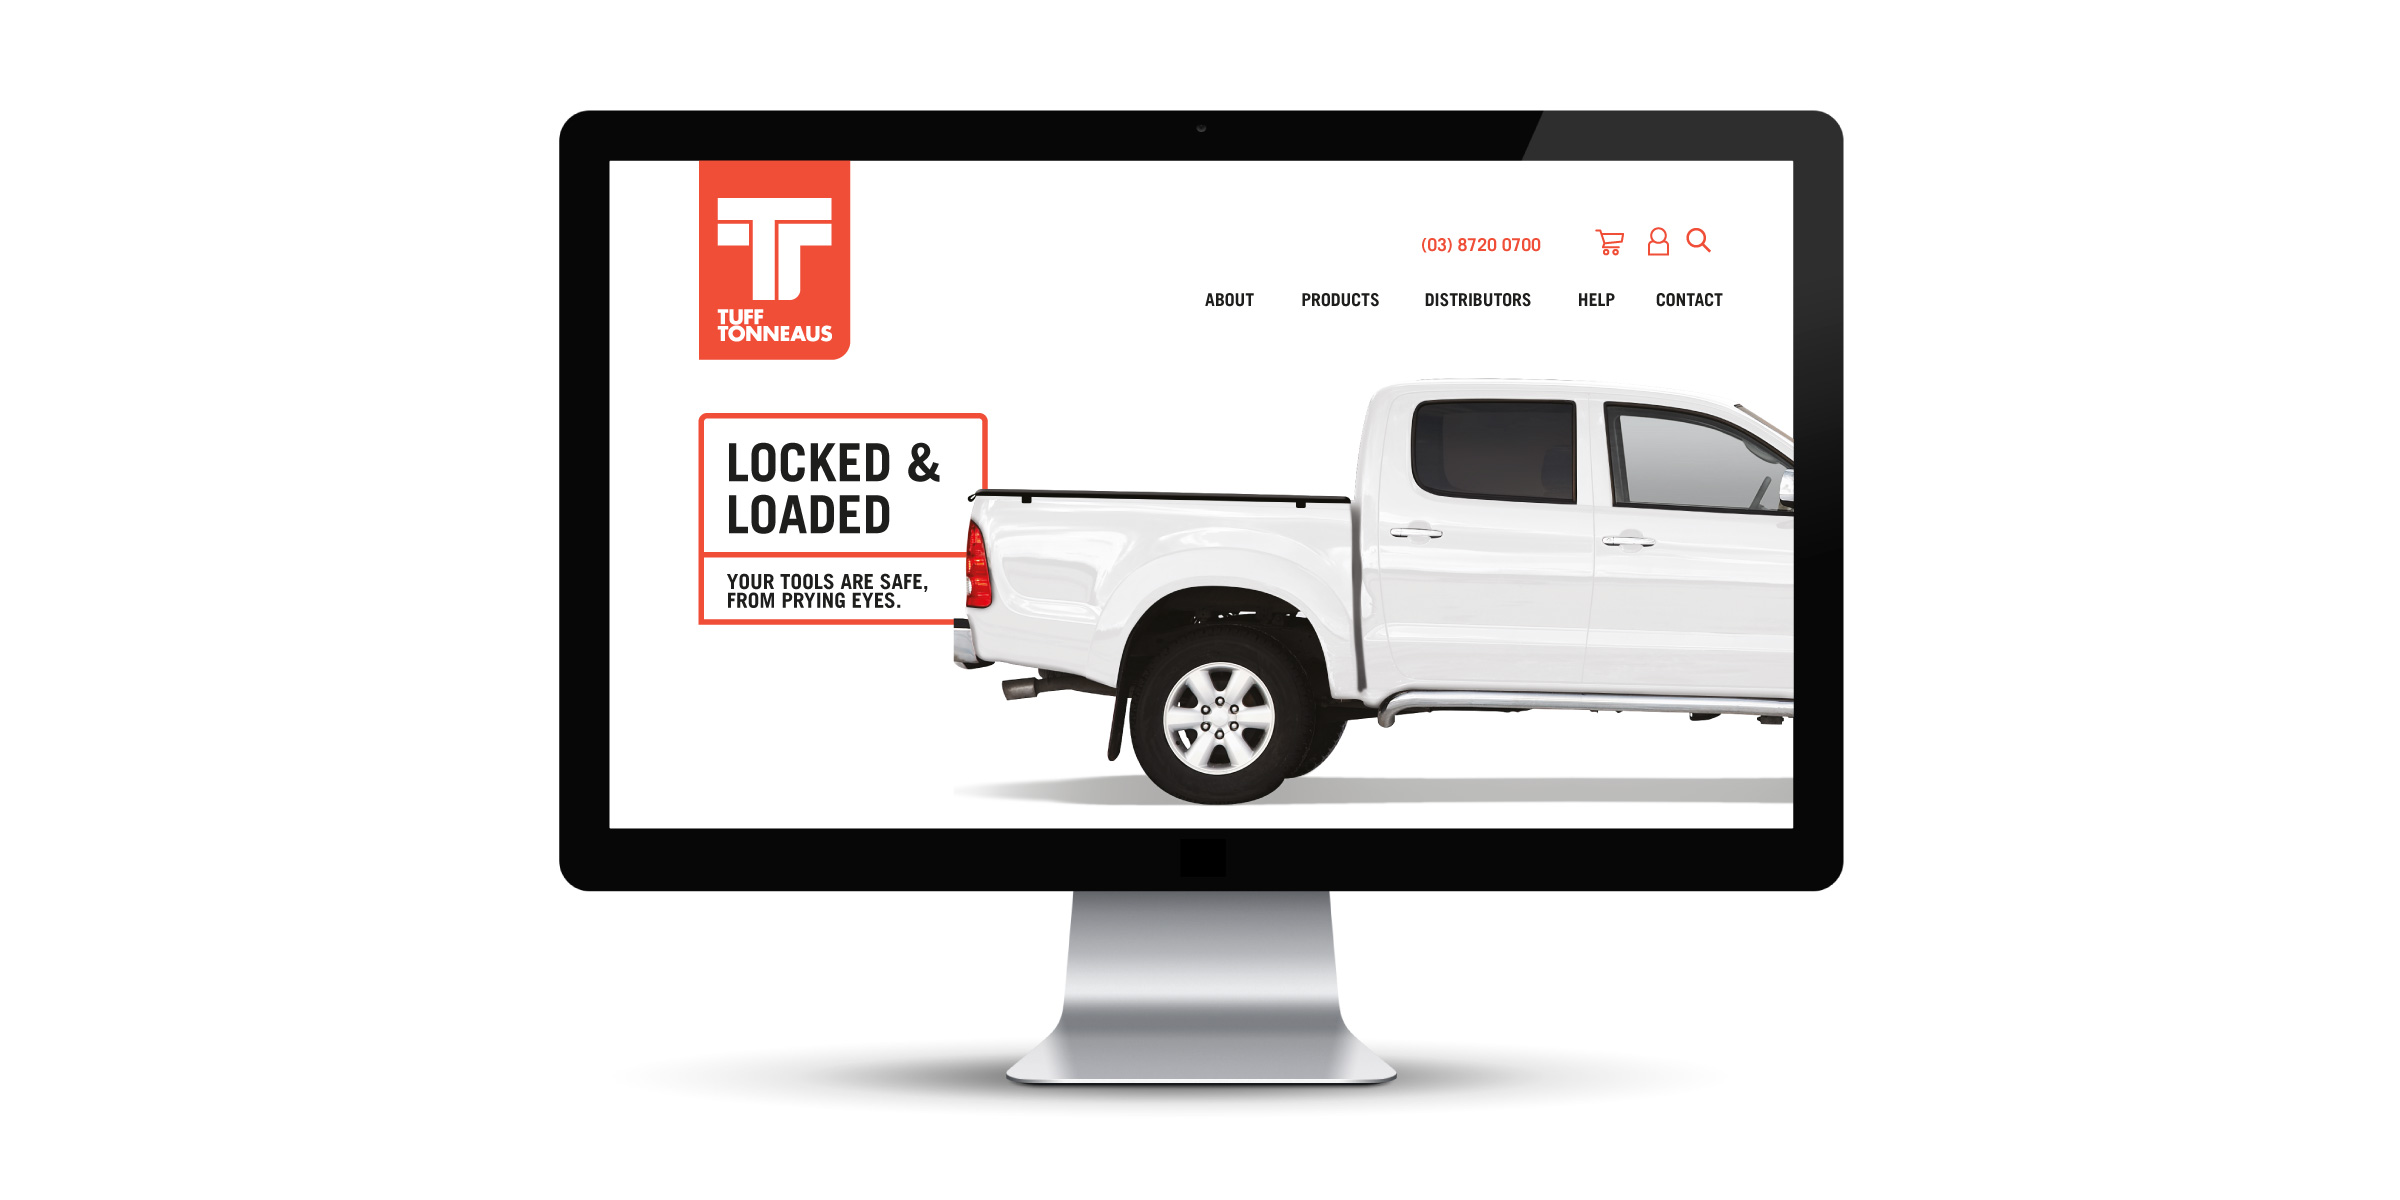 Tuff Tonneaus Website Design